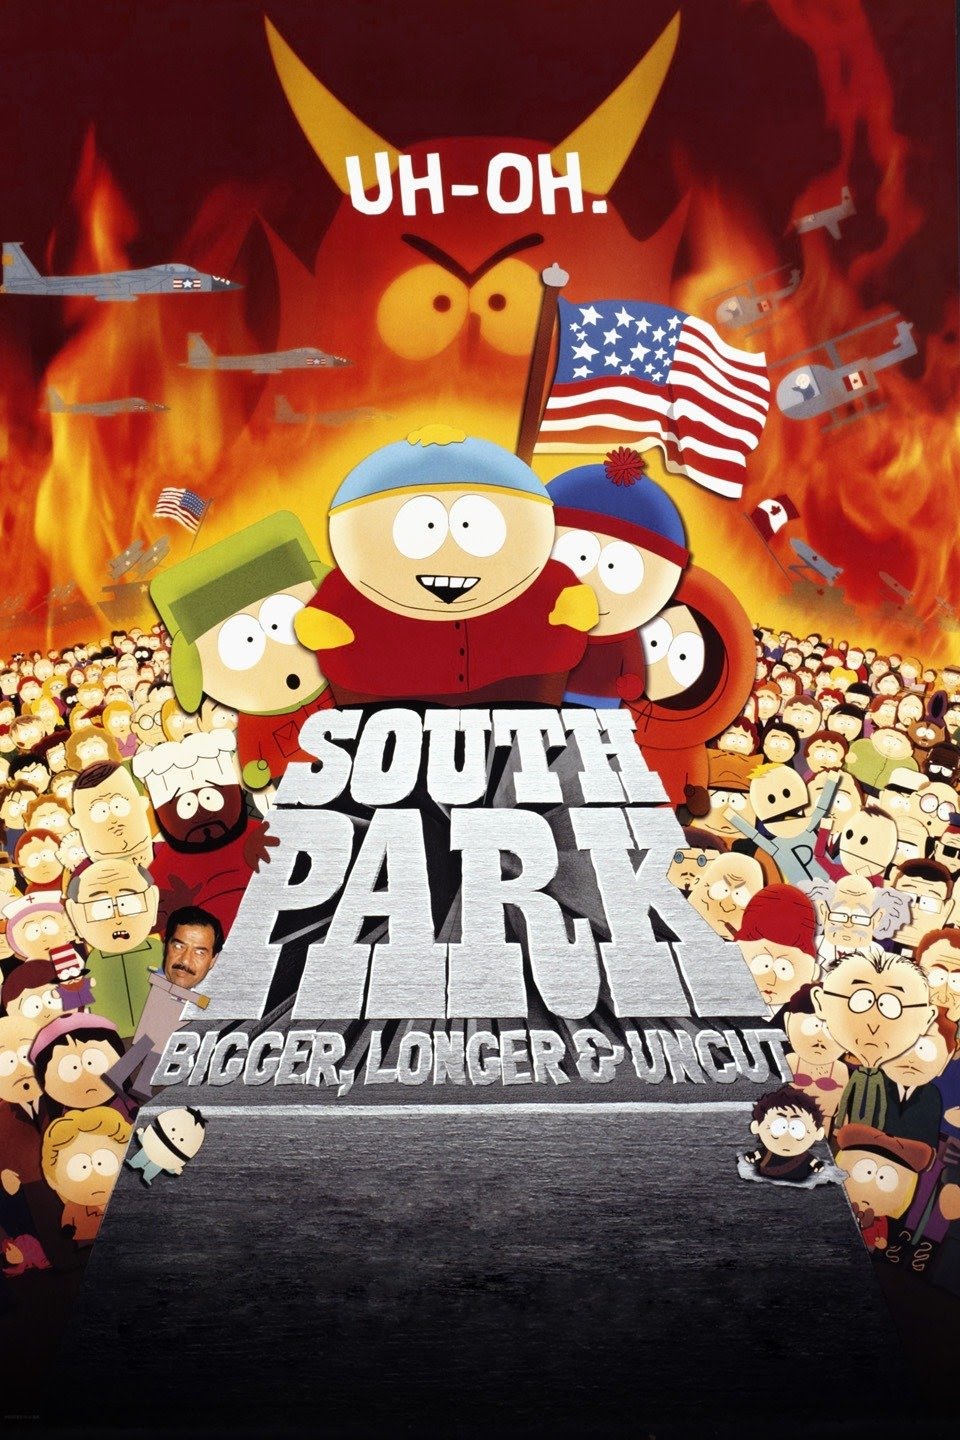 South Park Bigger, Longer and Uncut Warner Bros